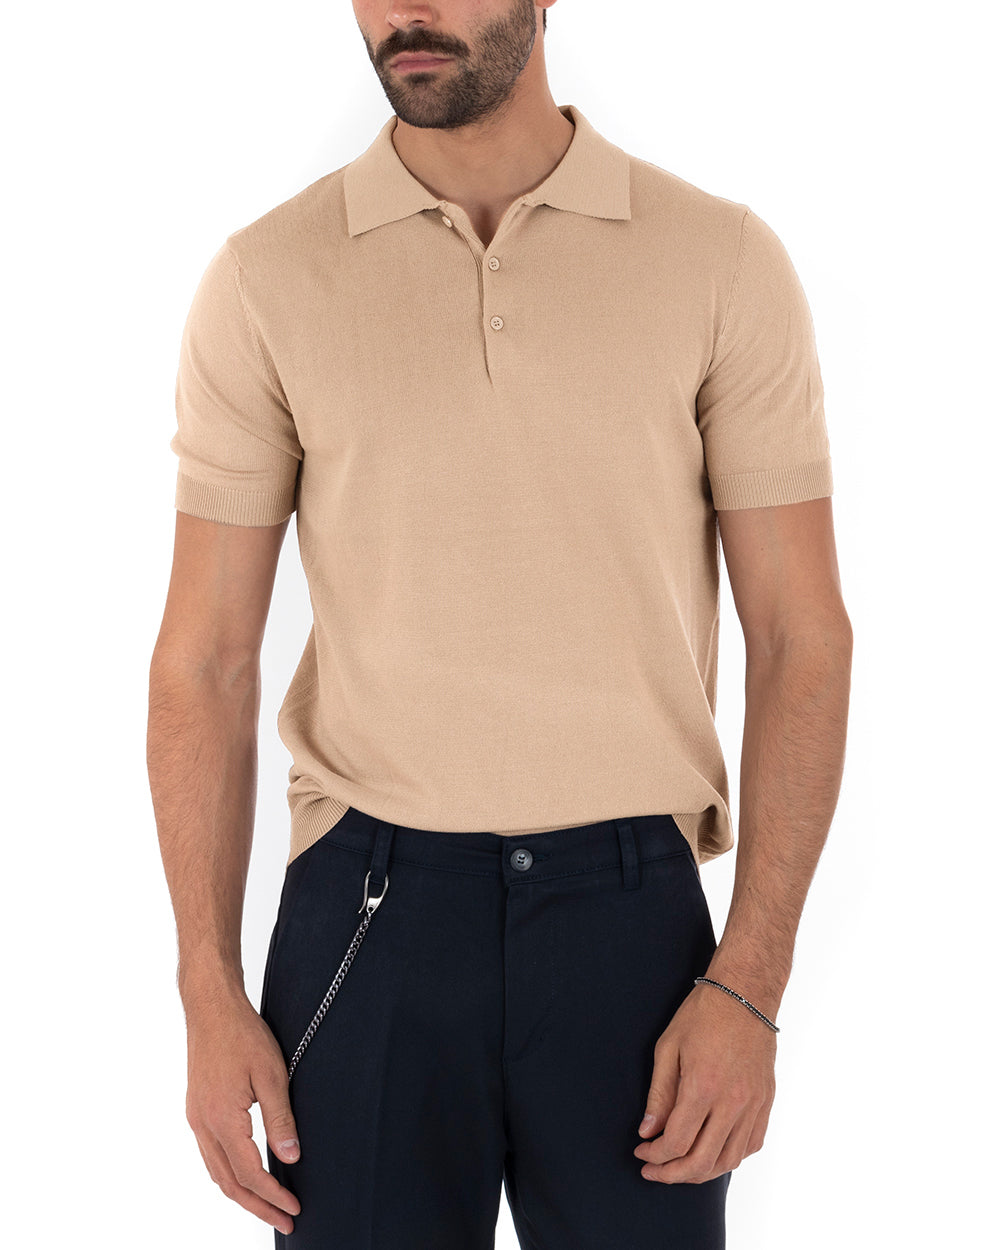 Polo Filo Uomo T-Shirt Manica Corta Con Colletto Bottoni Tinta Unita Beige Casual GIOSAL-TS2791A